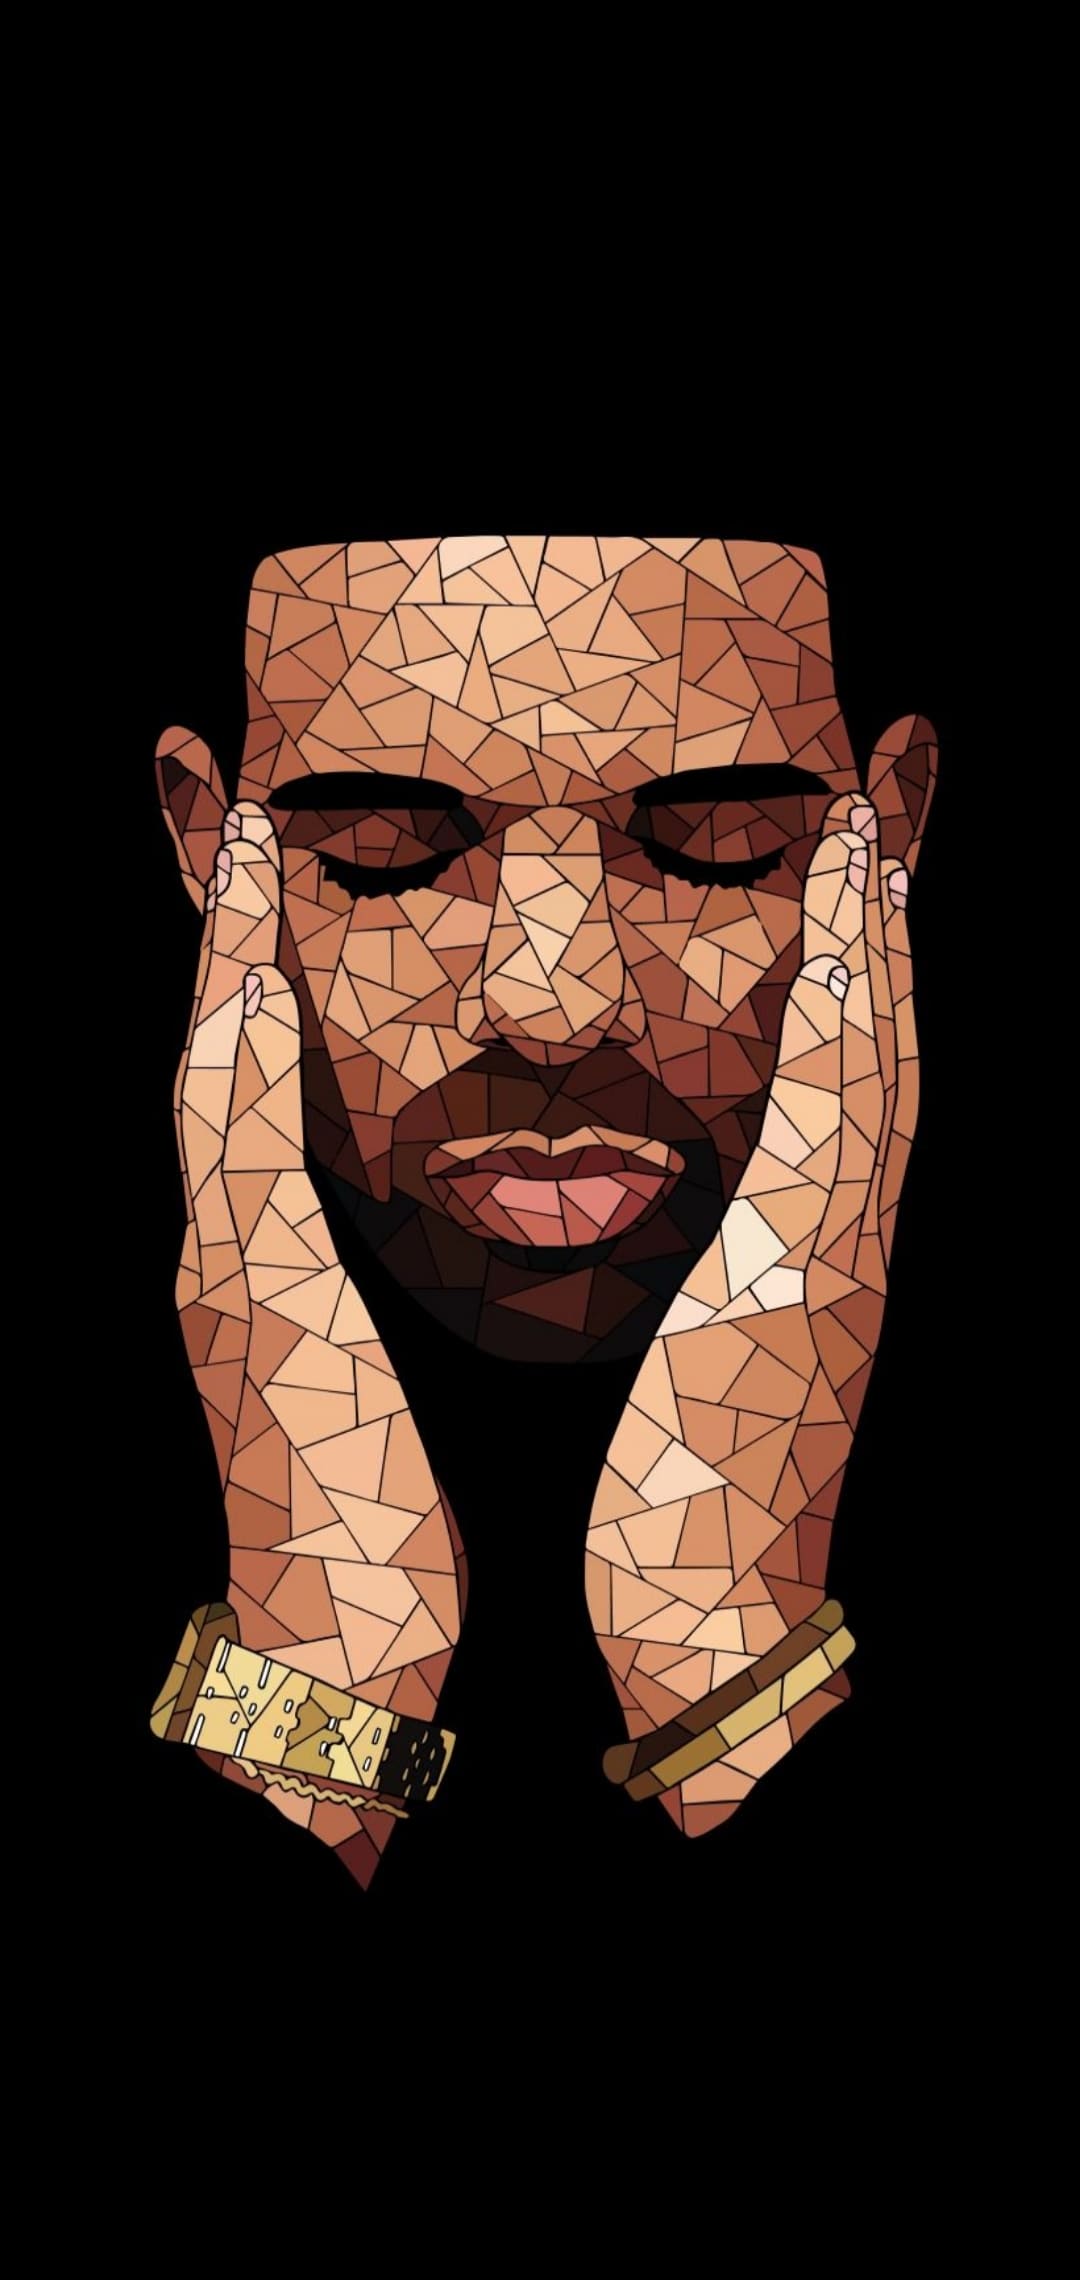 Drake Images Wallpaper